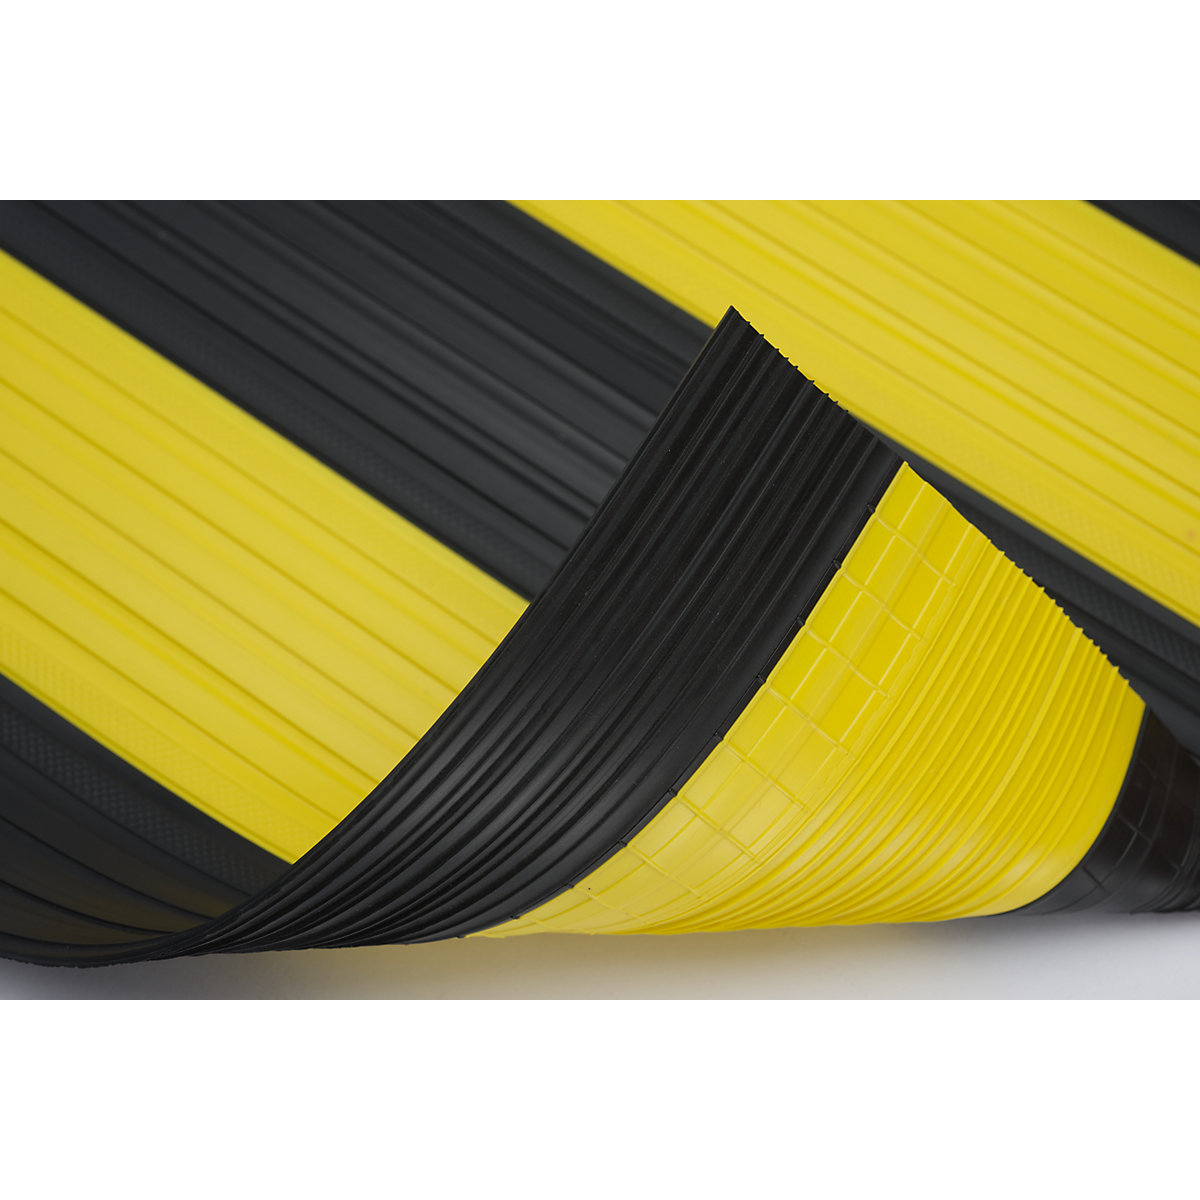 Mekana PVC staza, sa zatvorenom površinom, rola 10 m, u crno-žutoj boji, širina 600 mm-3